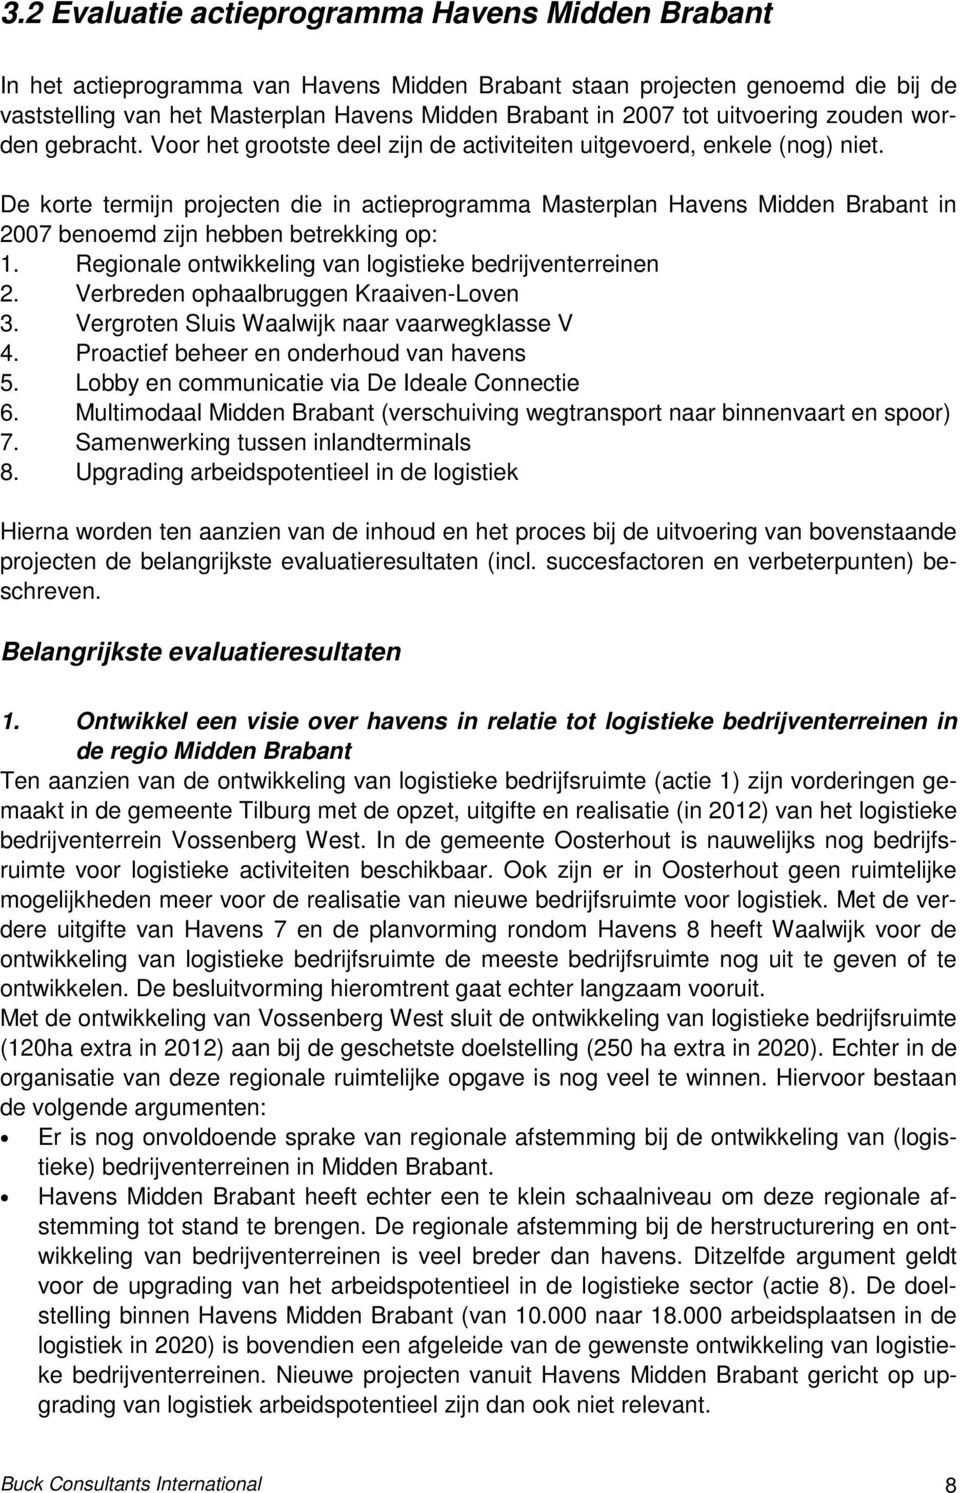 De korte termijn projecten die in actieprogramma Masterplan Havens Midden Brabant in 2007 benoemd zijn hebben betrekking op: 1. Regionale ontwikkeling van logistieke bedrijventerreinen 2.